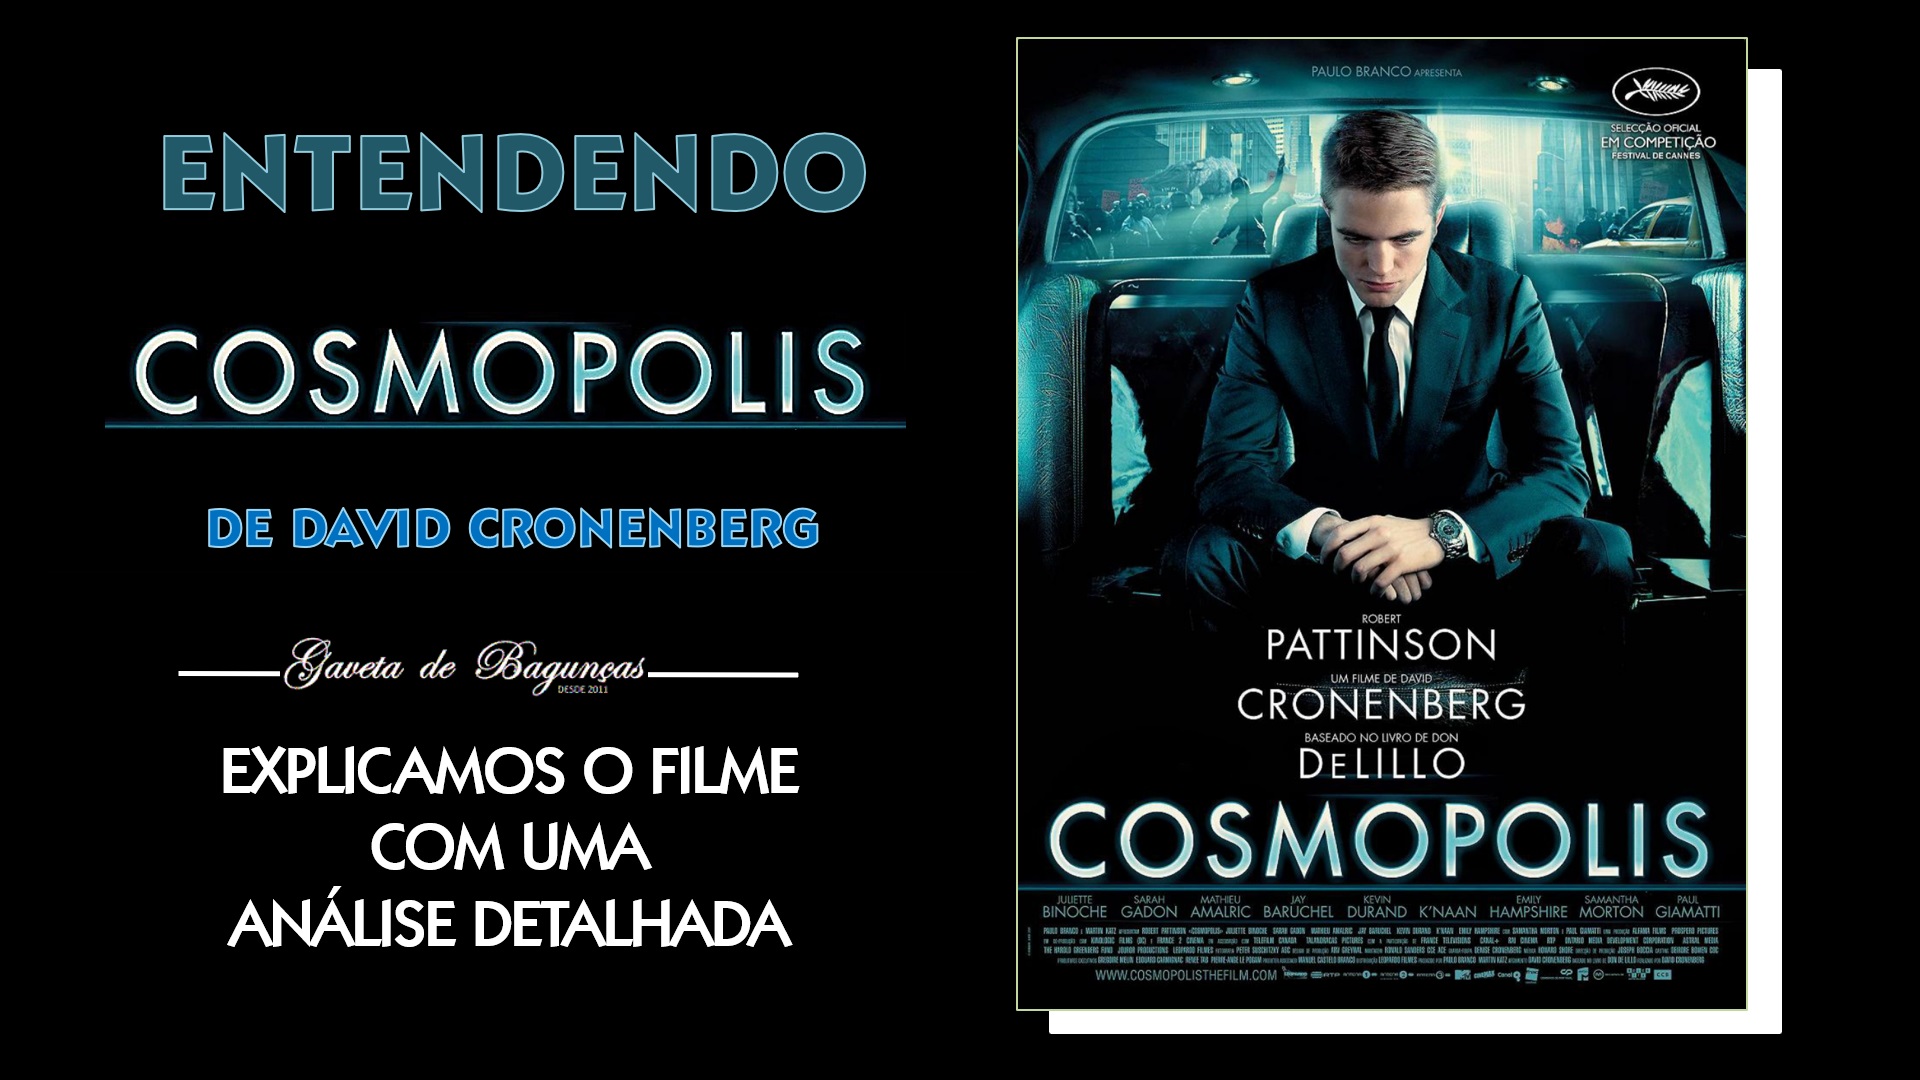 Quer entender completamente o filme "Cosmopolis", clássico cult do cineasta David Cronenberg? Nesta análise minuciosa, desvendamos cada aspecto intrigante da trama e suas mensagens profundas.